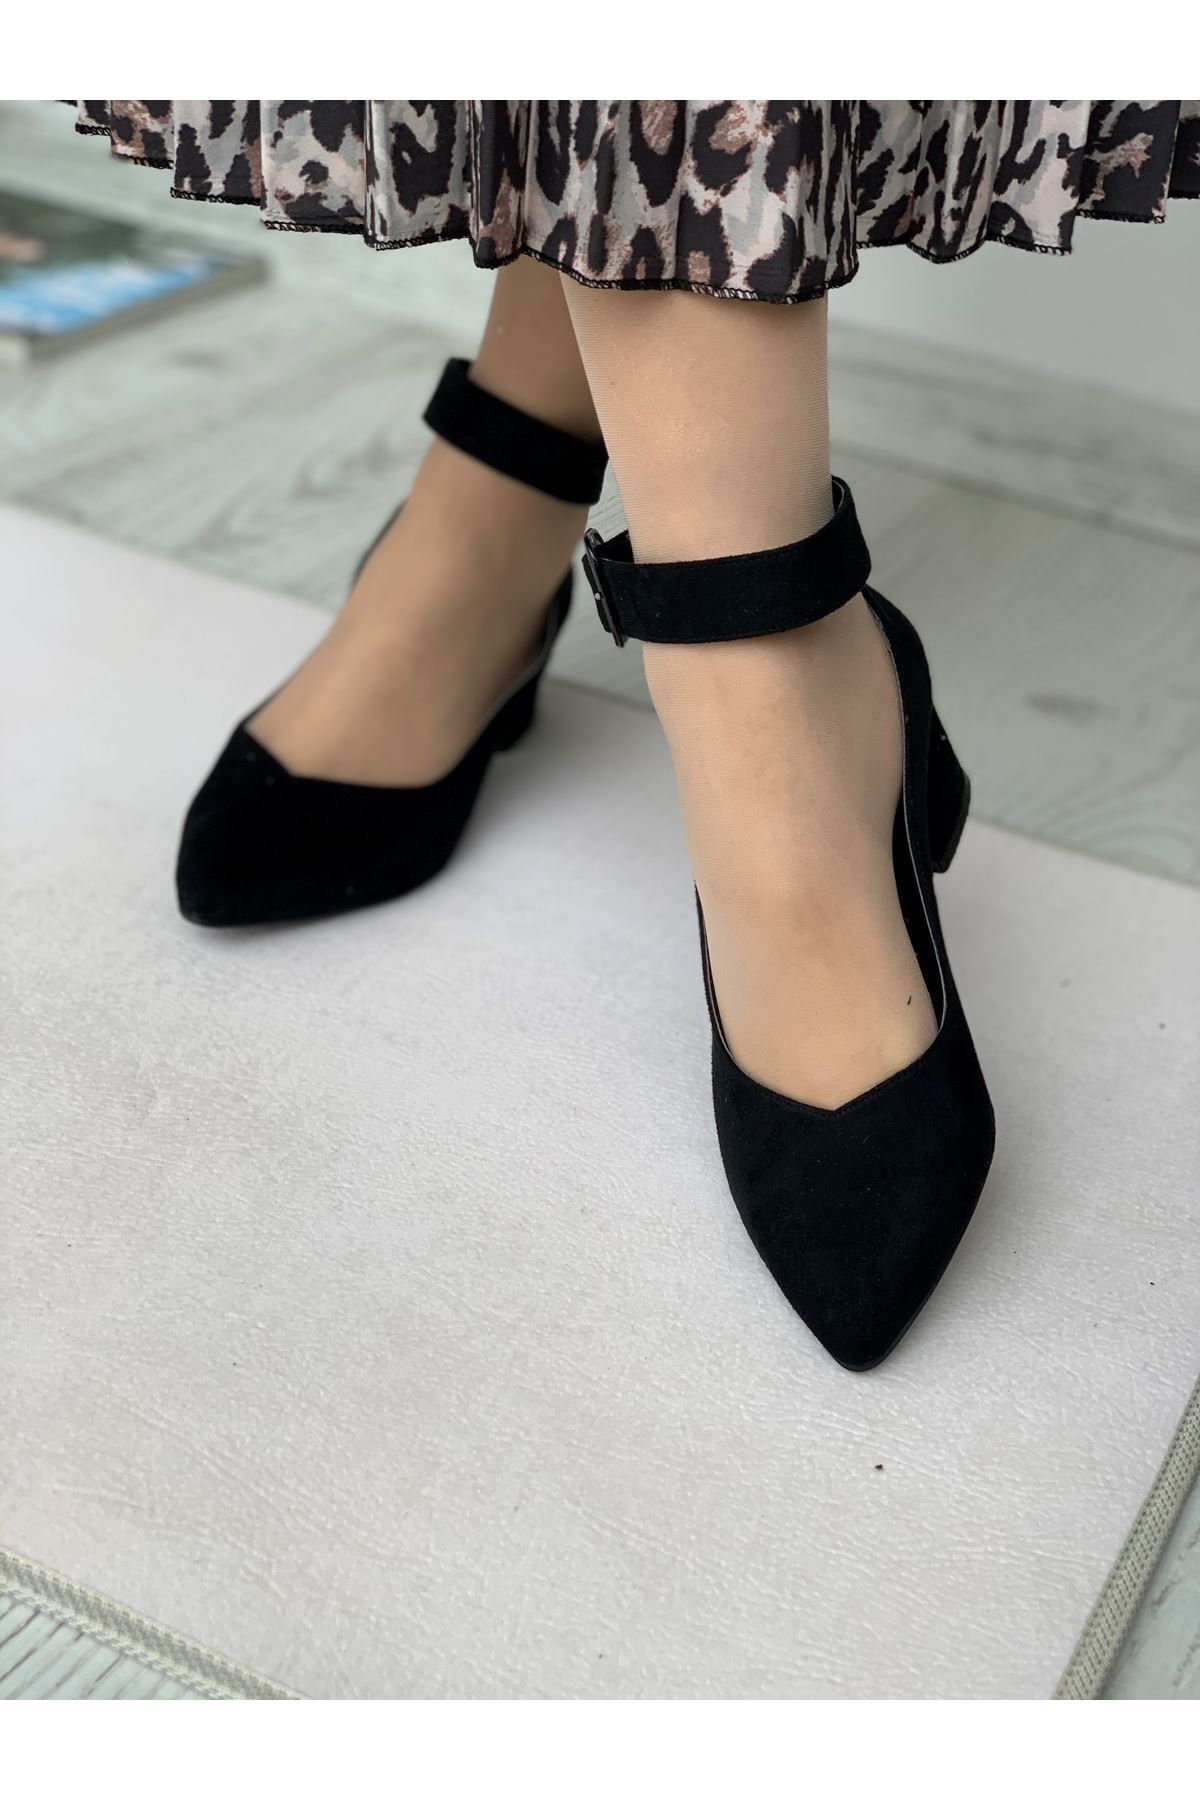 LAL SHOES & BAGS Bilekten Kemer Detaylı Kadın Topuklu Ayakkabı-s. Siyah